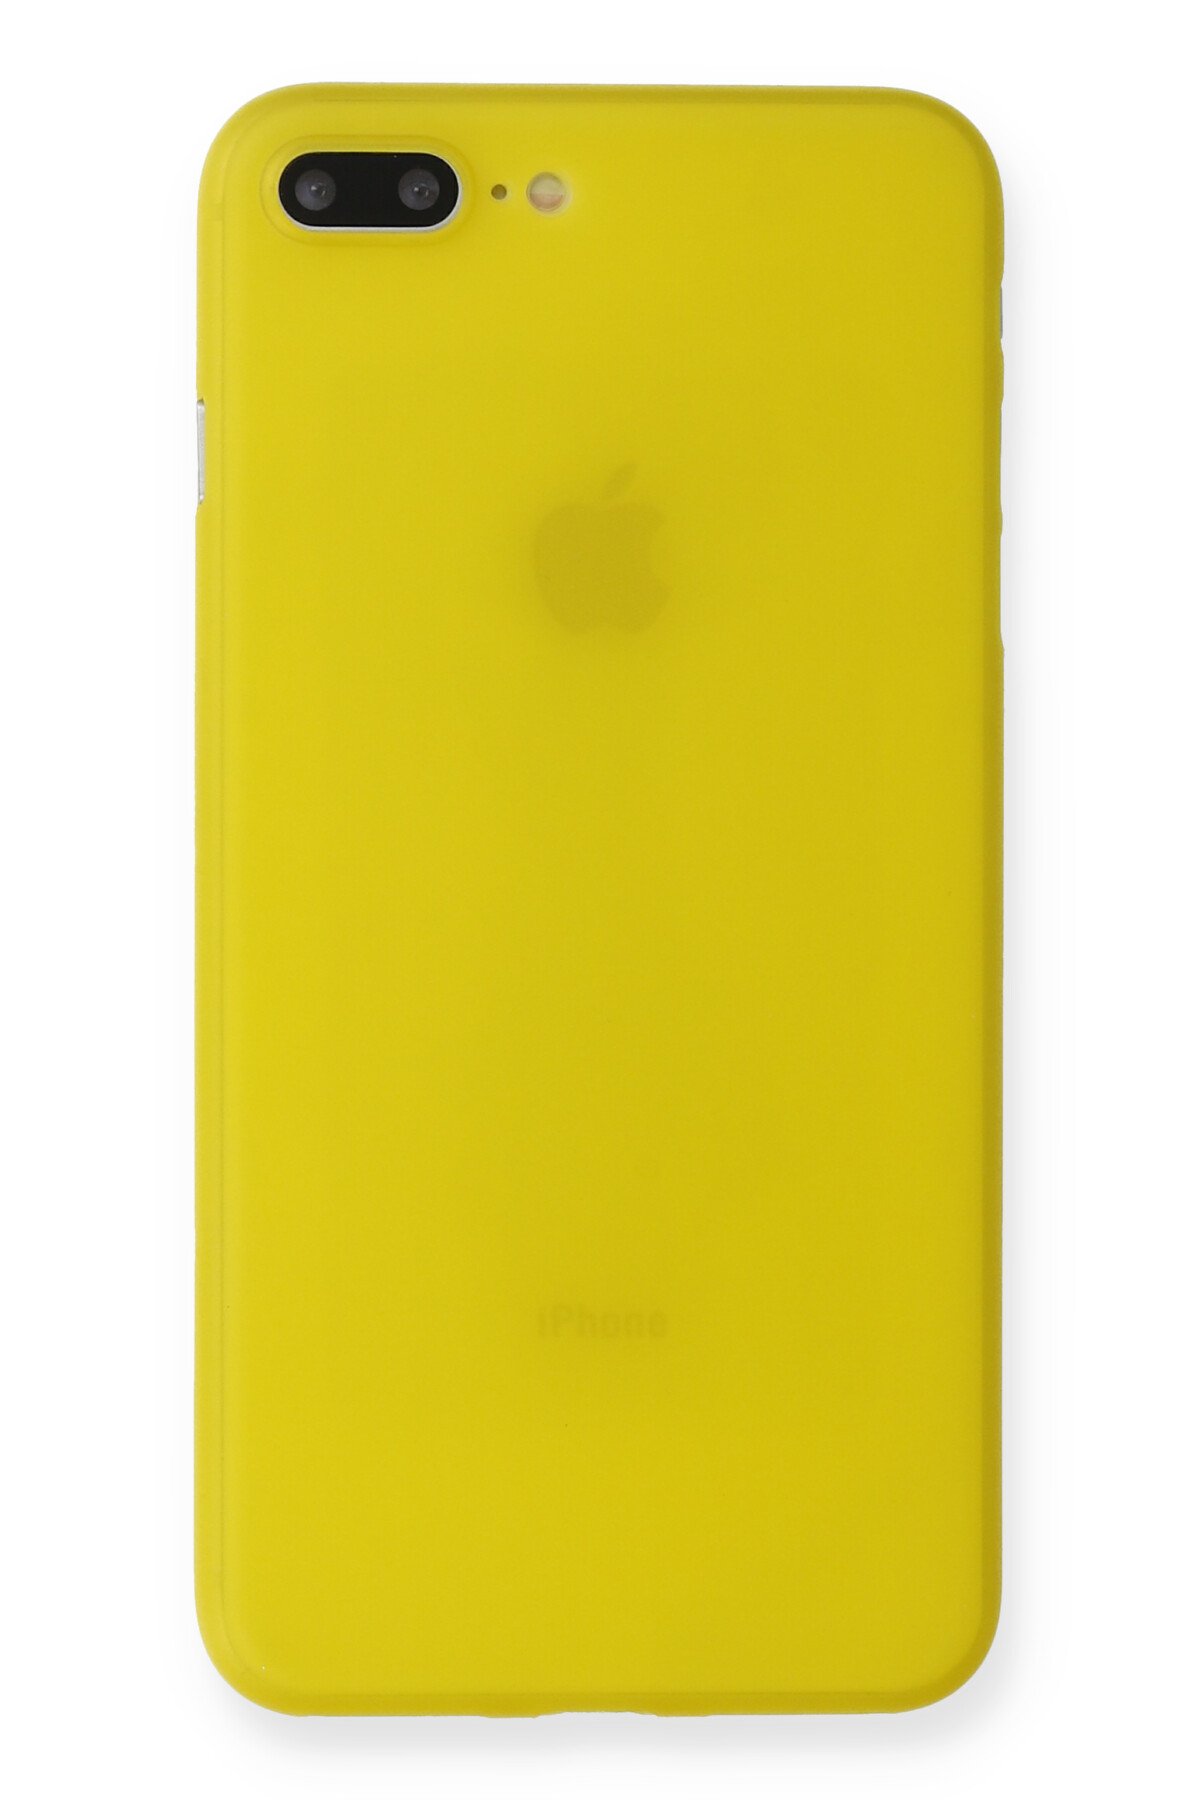 NewFace Newface iPhone 7 Plus Kılıf PP Ultra İnce Kapak - Sarı